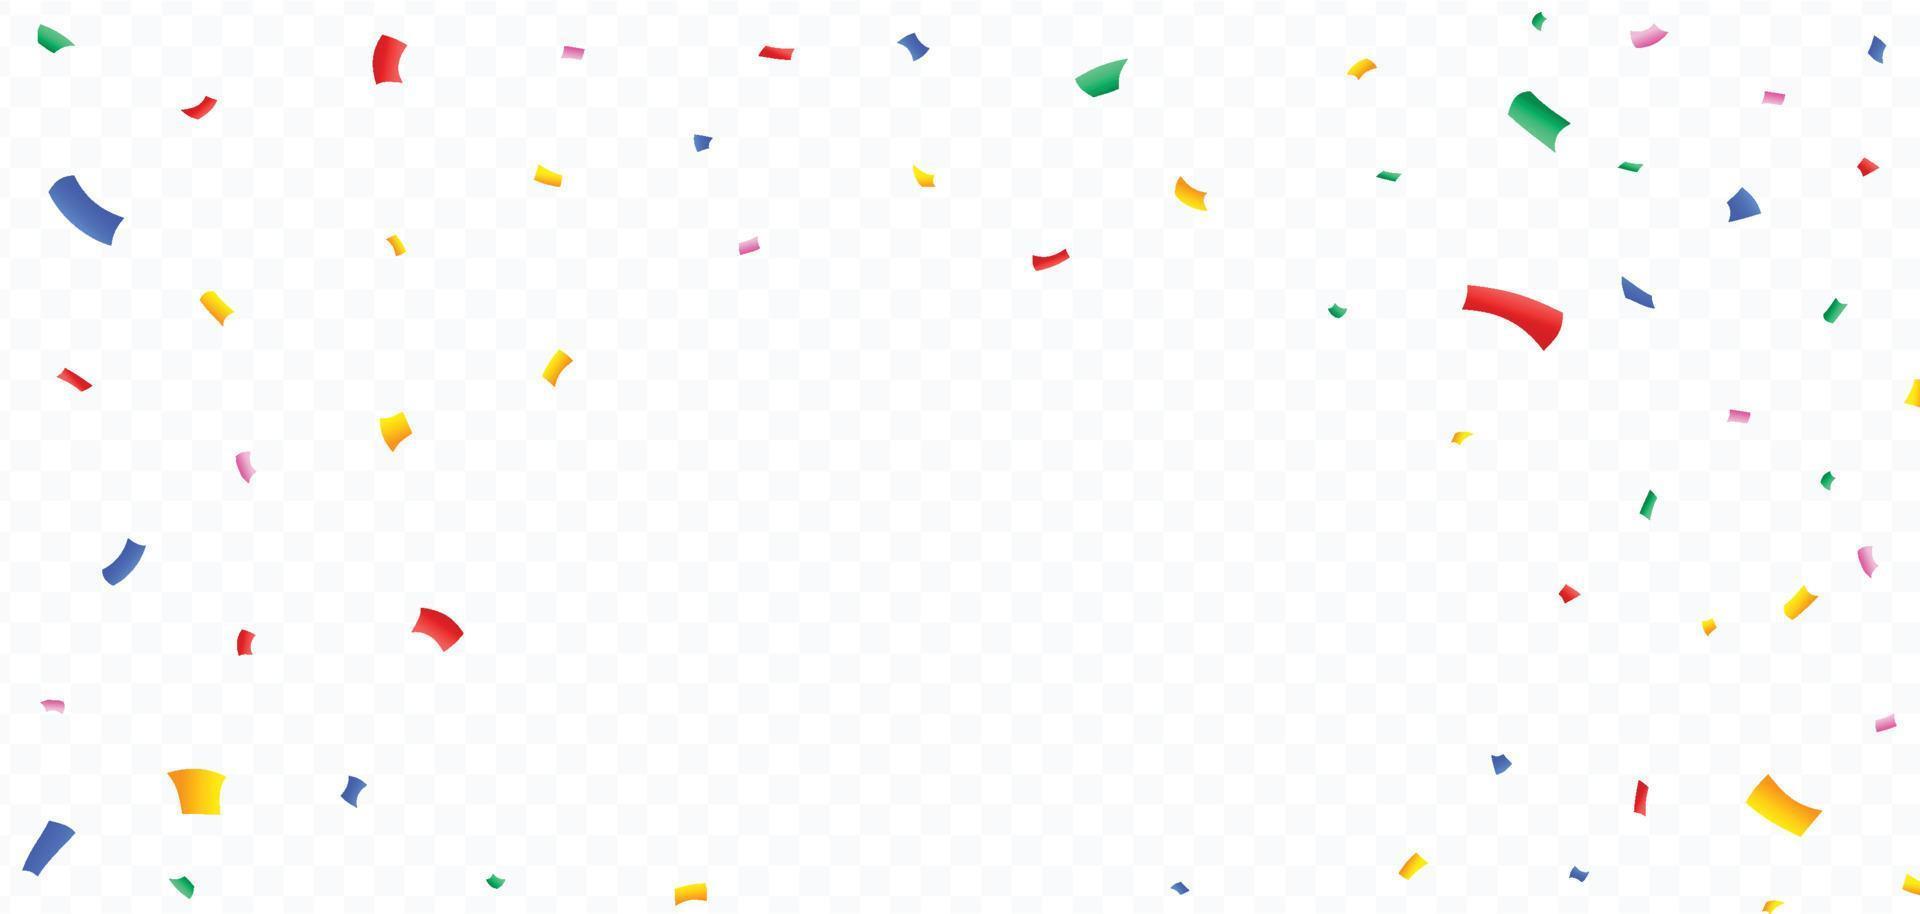 kleurrijke confetti en klatergoud explosie frame illustratie op een transparante achtergrond. carnaval elementen vector voor een verjaardag viering achtergrond. veelkleurige confetti en klatergoud frame vector.